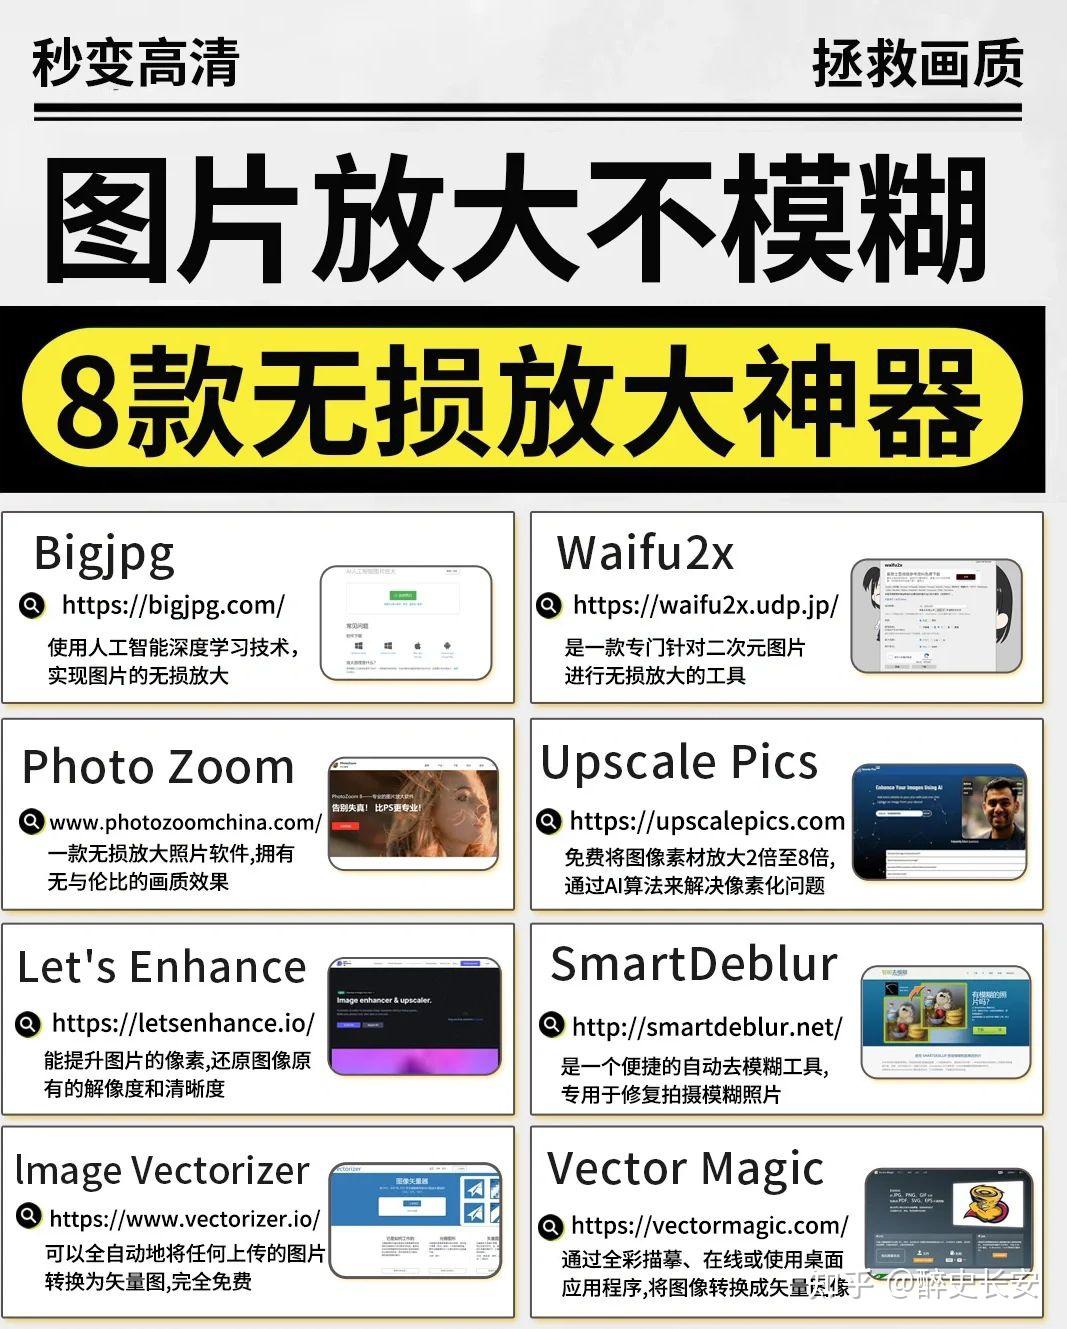 图片无损放大软件:Topaz Gigapixel AI for mac/win版 - 哔哩哔哩